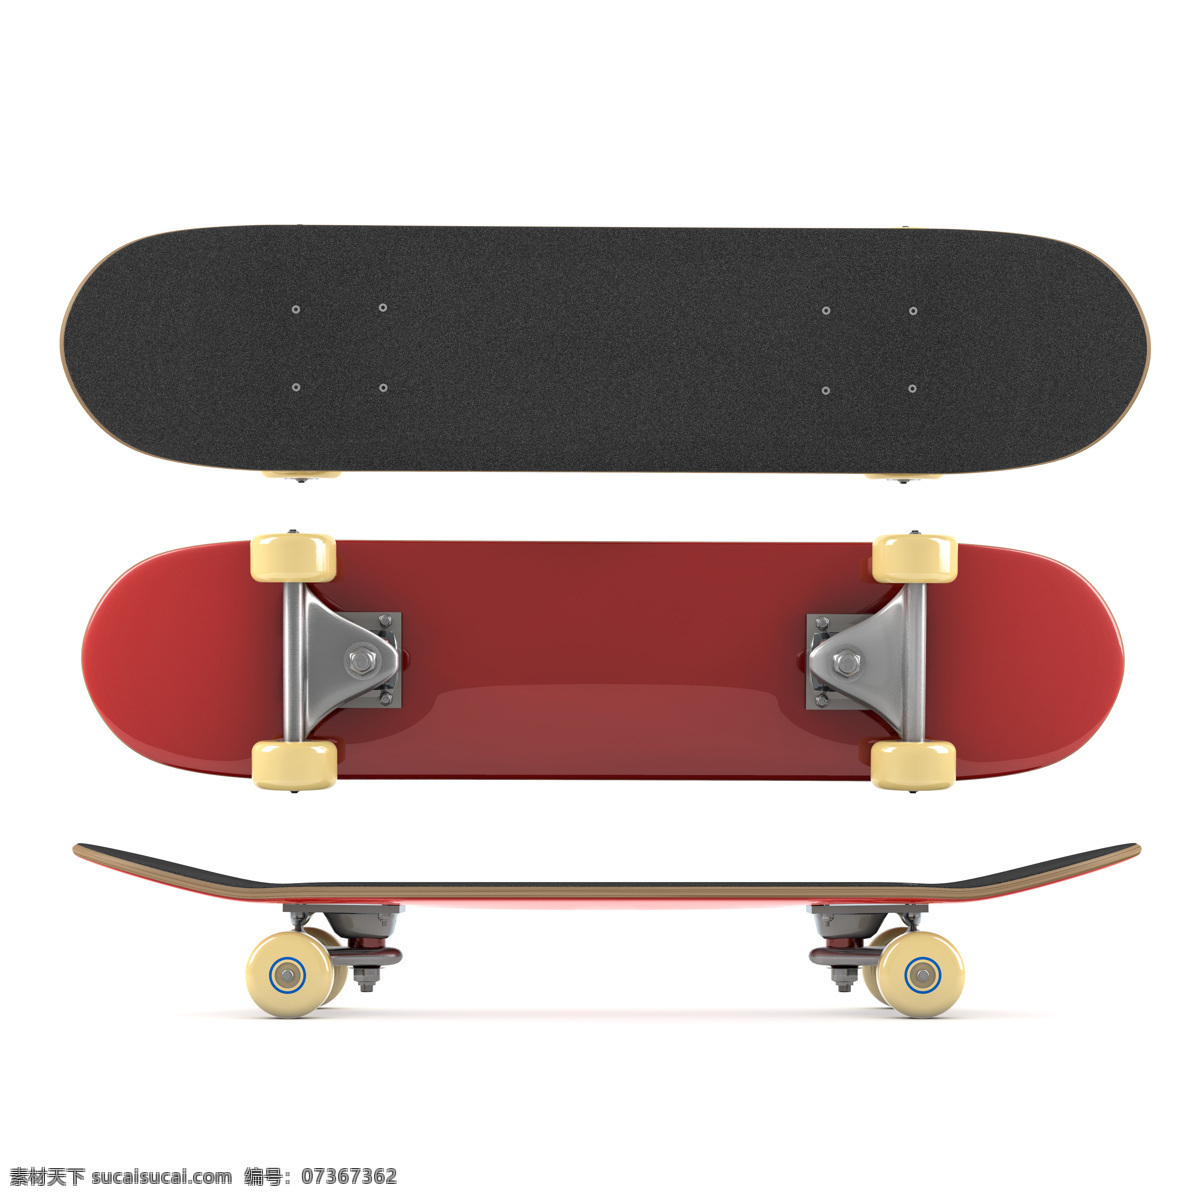 红色 滑板车 红色滑板车 动 动感人物 滑板 滑板运动 体育运动 生活百科